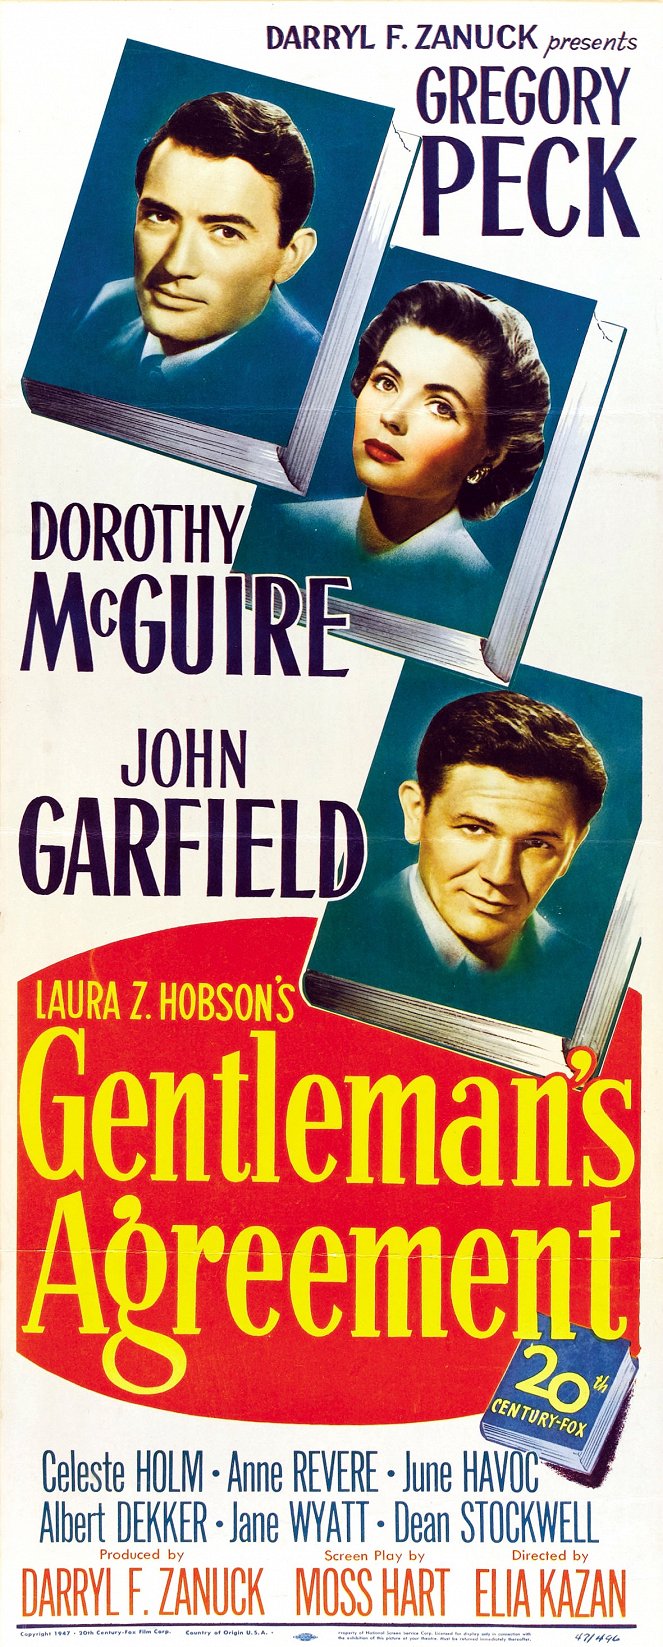 Gentleman's Agreement - Posters